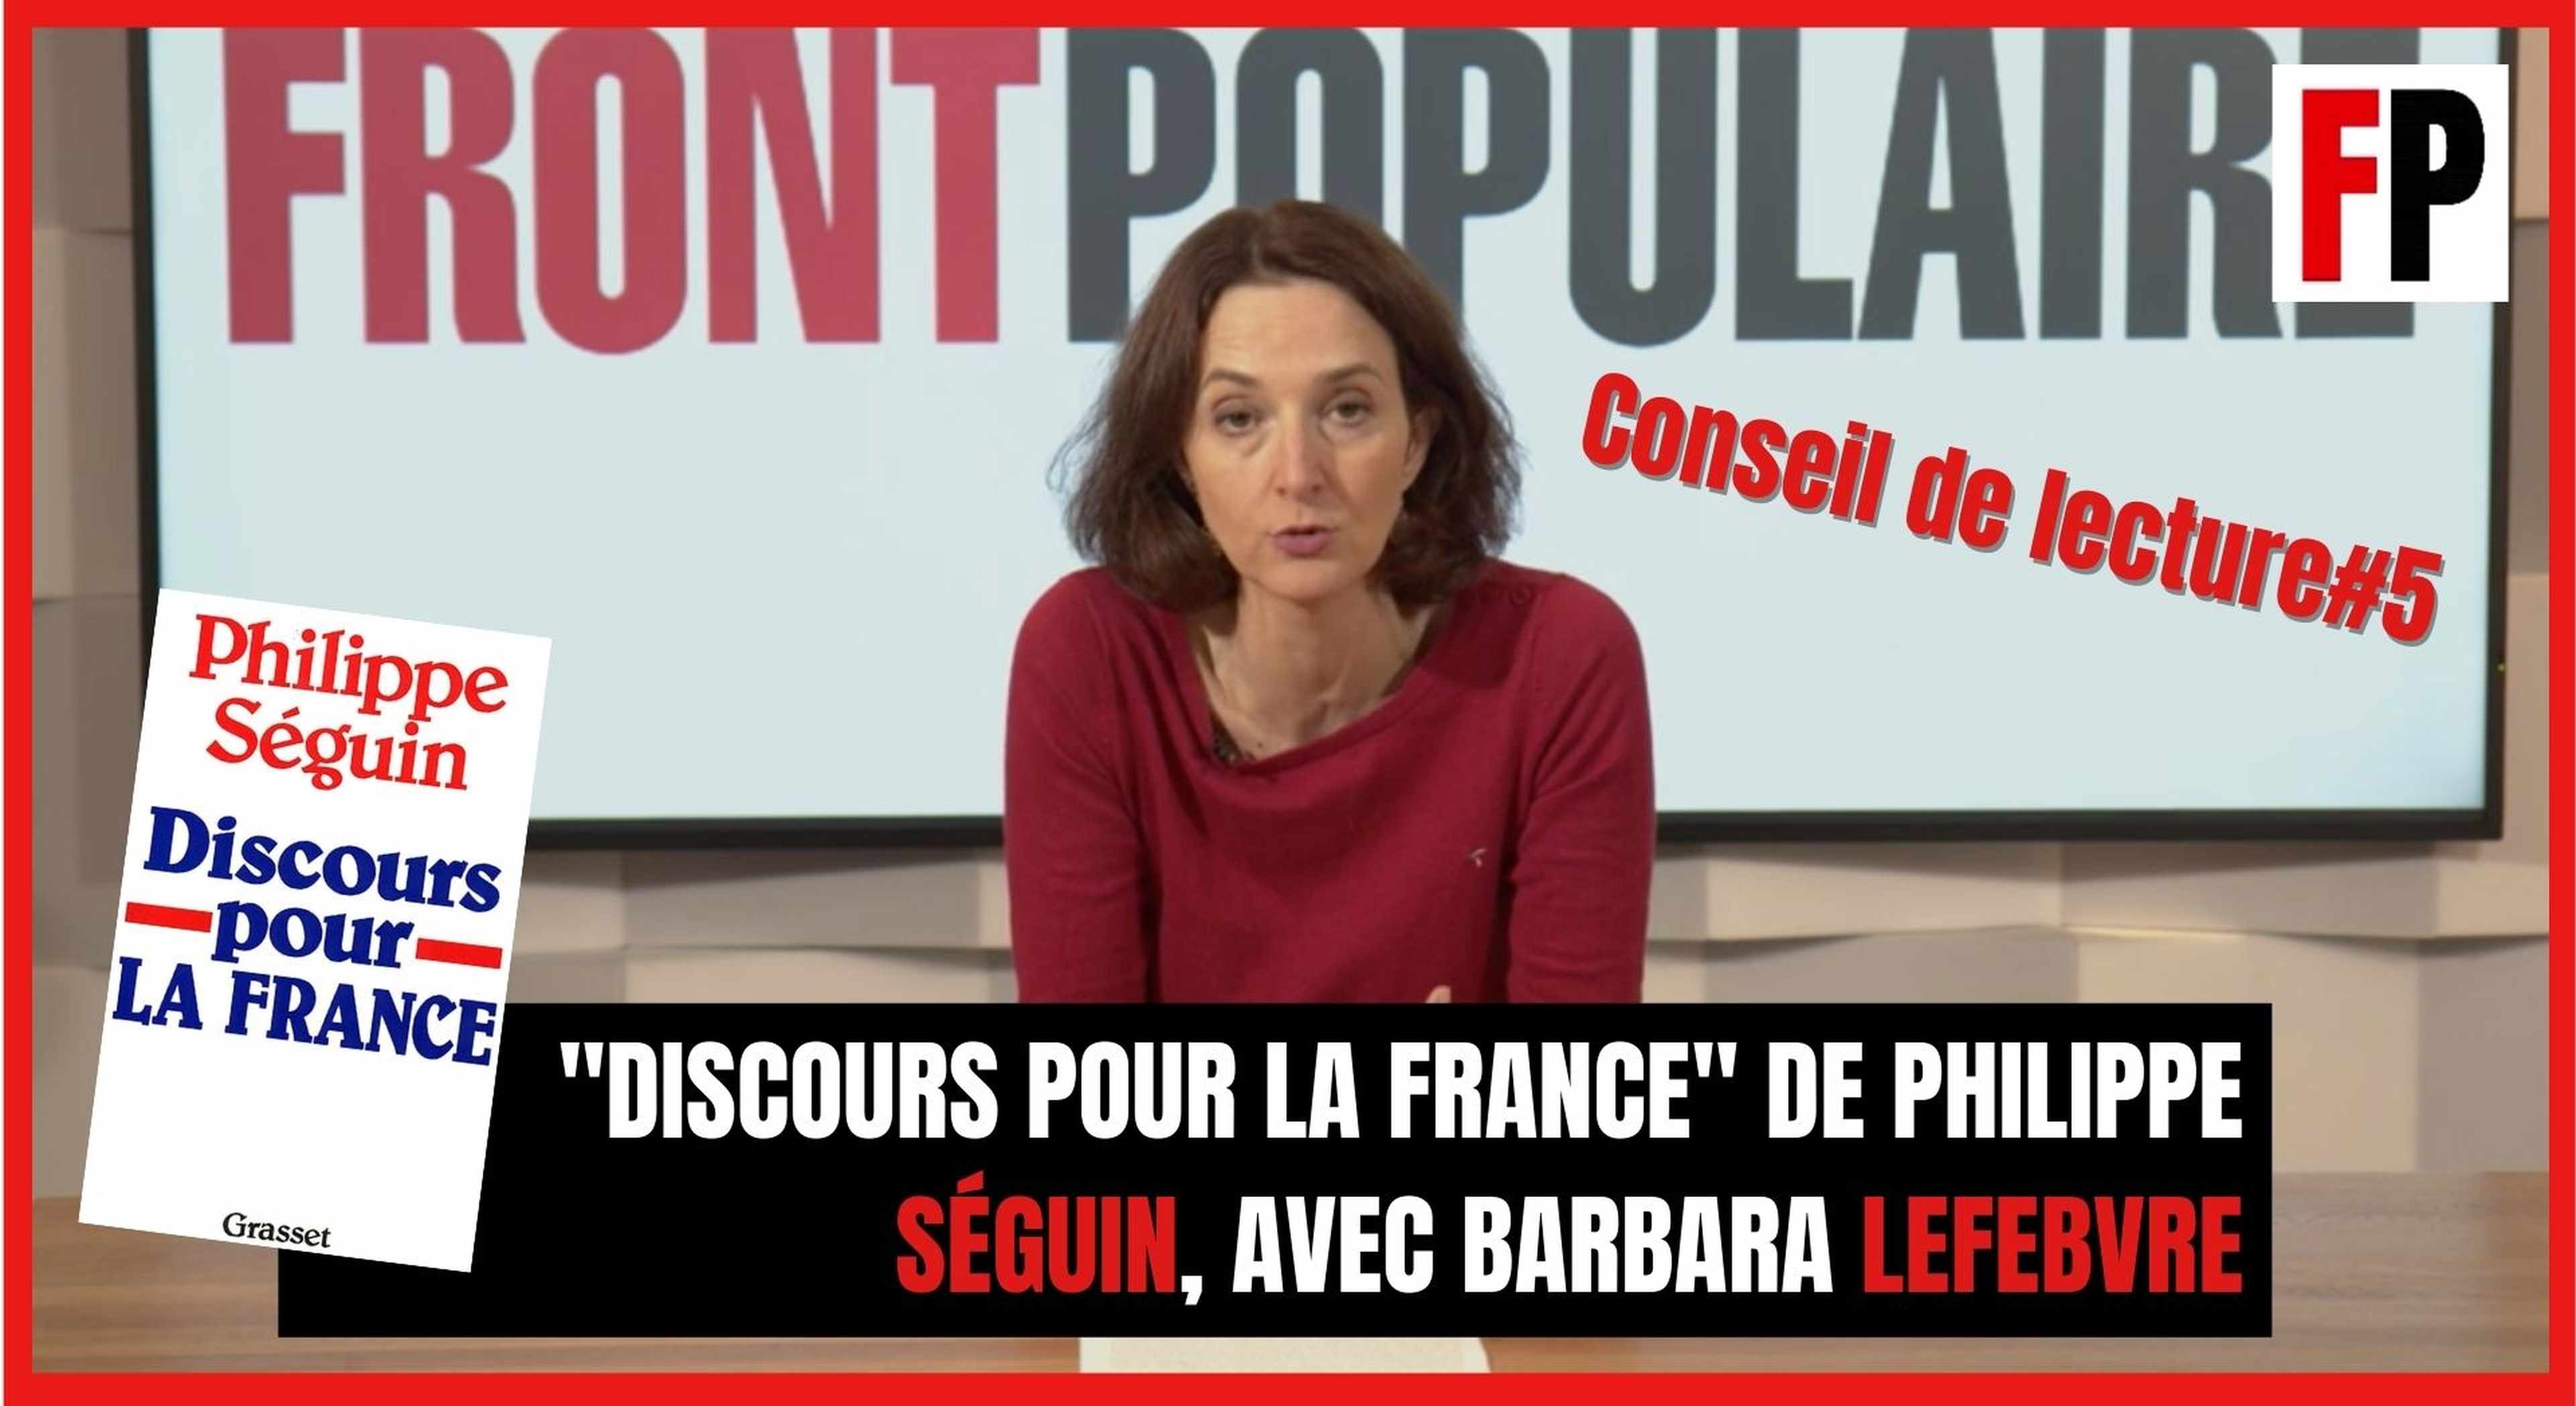 Conseil de lecture #5 : "Discours pour la France" de Philippe Séguin, avec Barbara Lefebvre